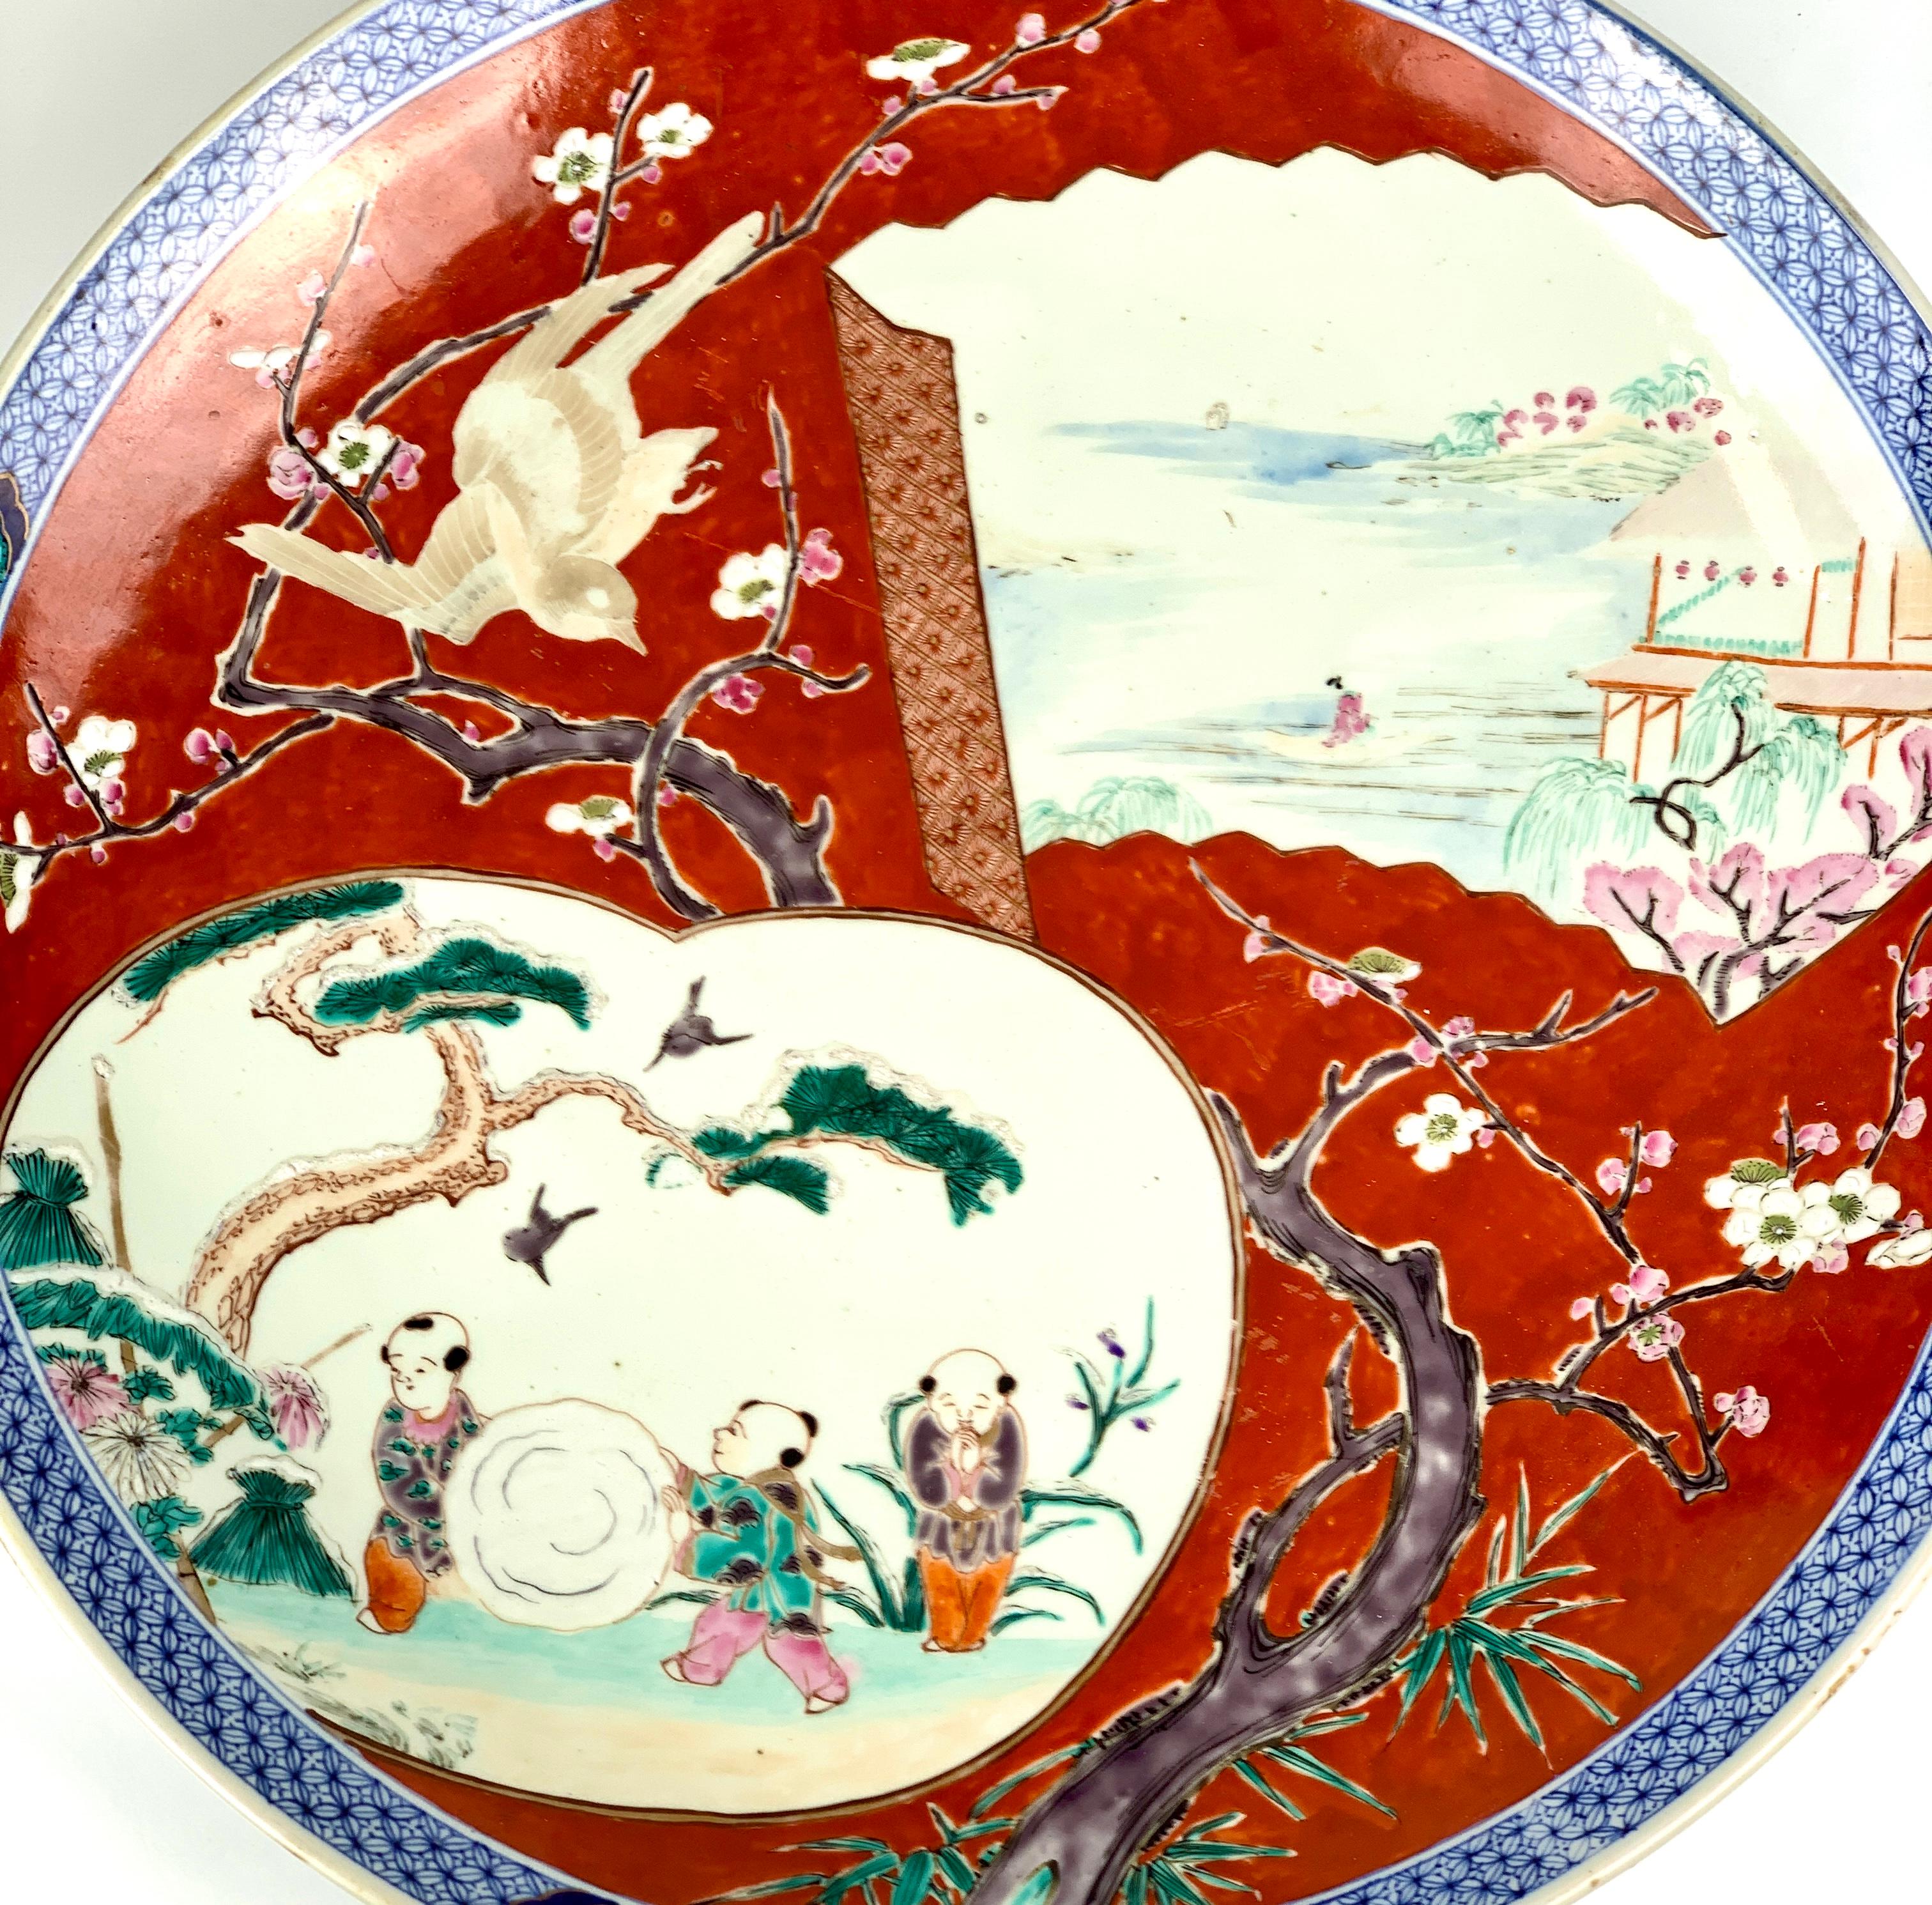 Dieses große antike Ladegerät (18 Zoll im Durchmesser) ist ein Prunkstück der japanischen Dekorationskunst. 
Das aufwendige handgemalte Design aus der Meiji-Periode des späten 19. Jahrhunderts zeigt eine entzückende Darstellung von Kindern beim